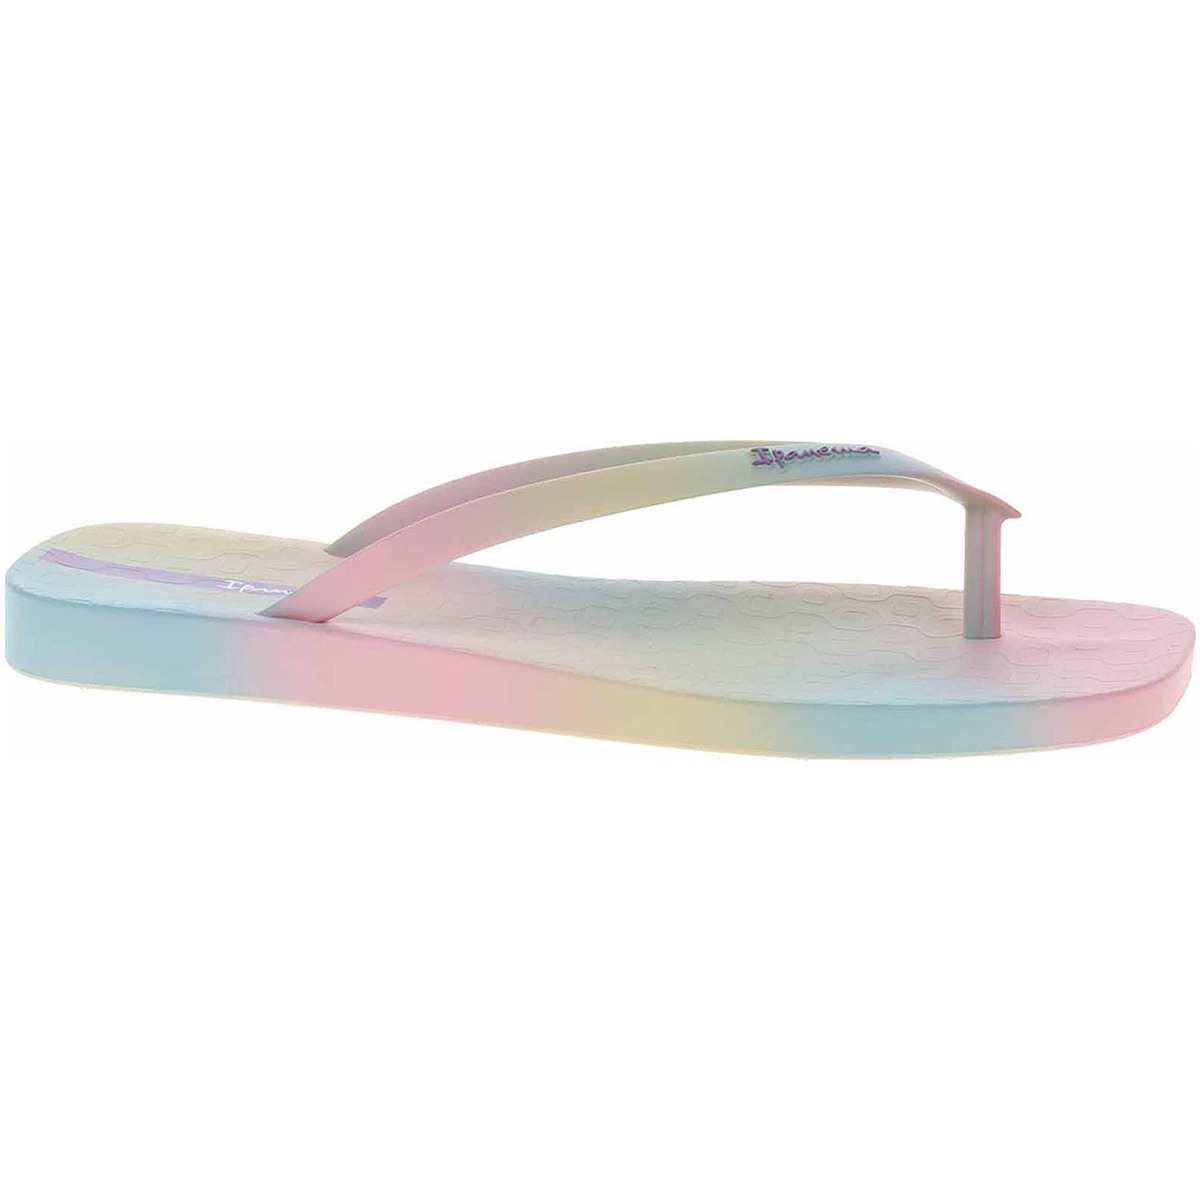 Ipanema  Plážové pantofle  26795-20988 pink-pink-beige  Boty do vody Růžová